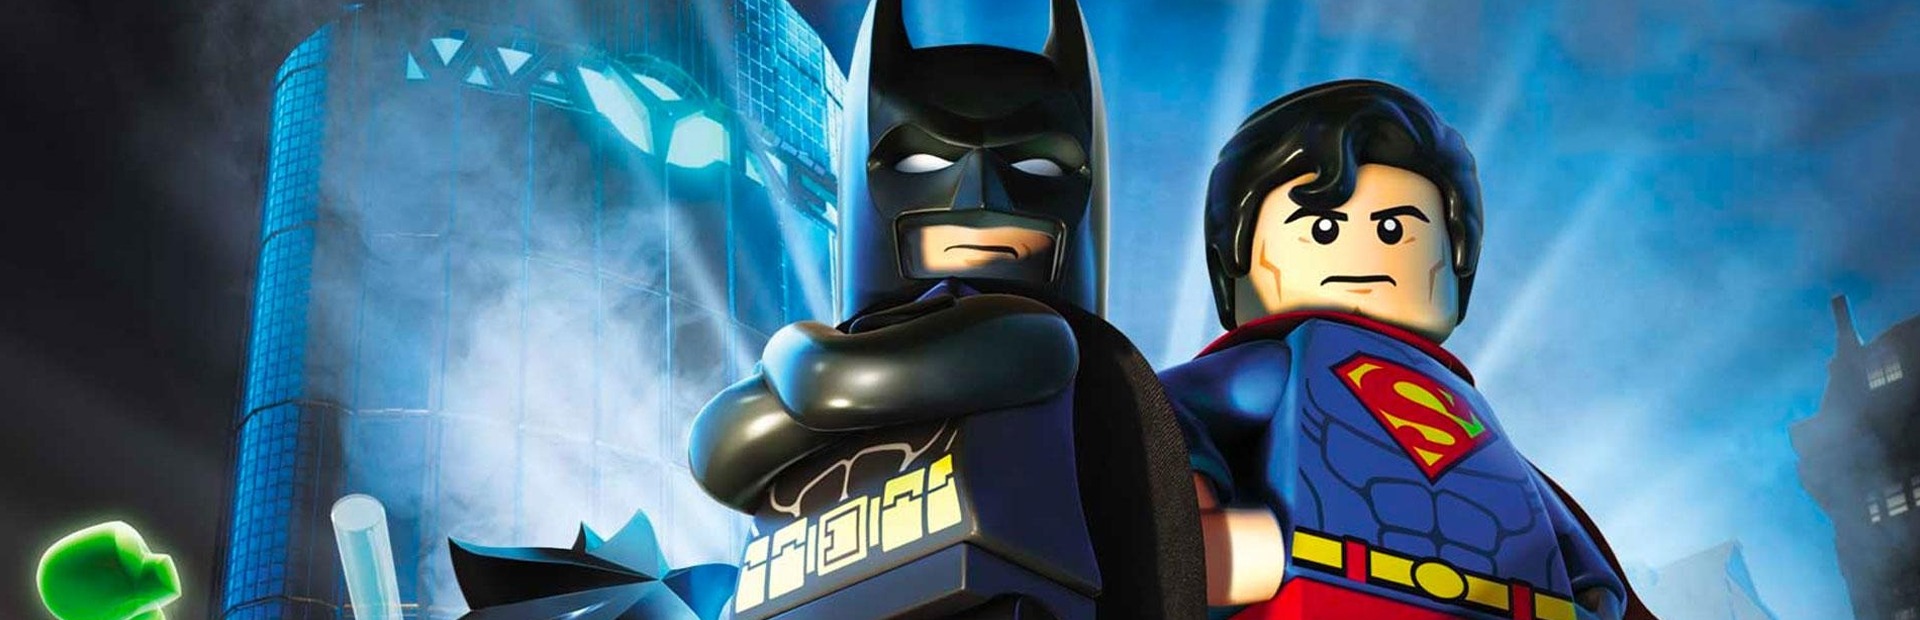 LEGO: Batman Trilogy